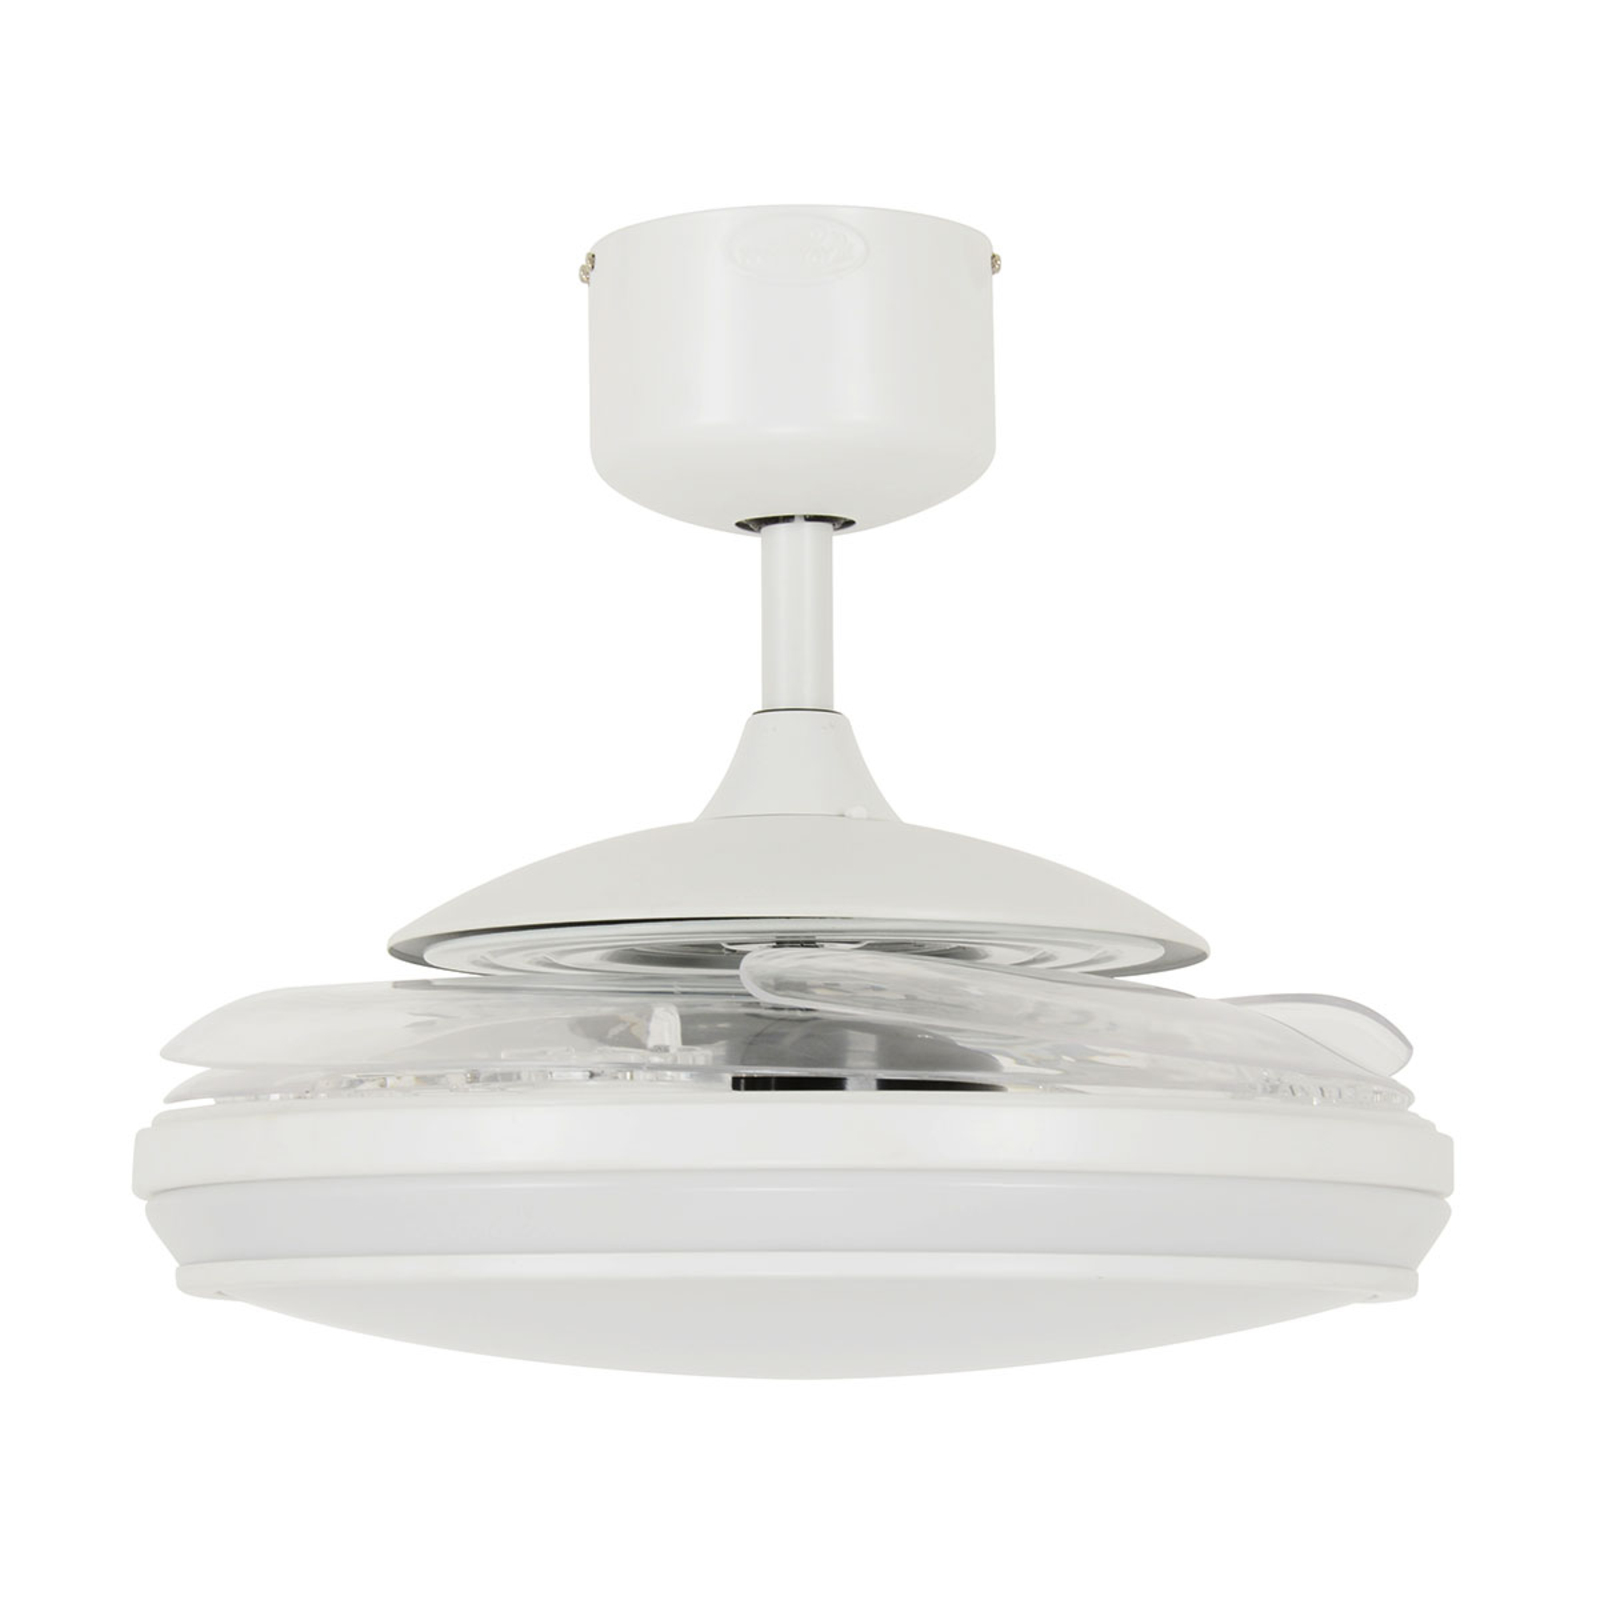 Faro LED ventilador de techo Fanaway Evo 1 blanco 121 cm silencioso